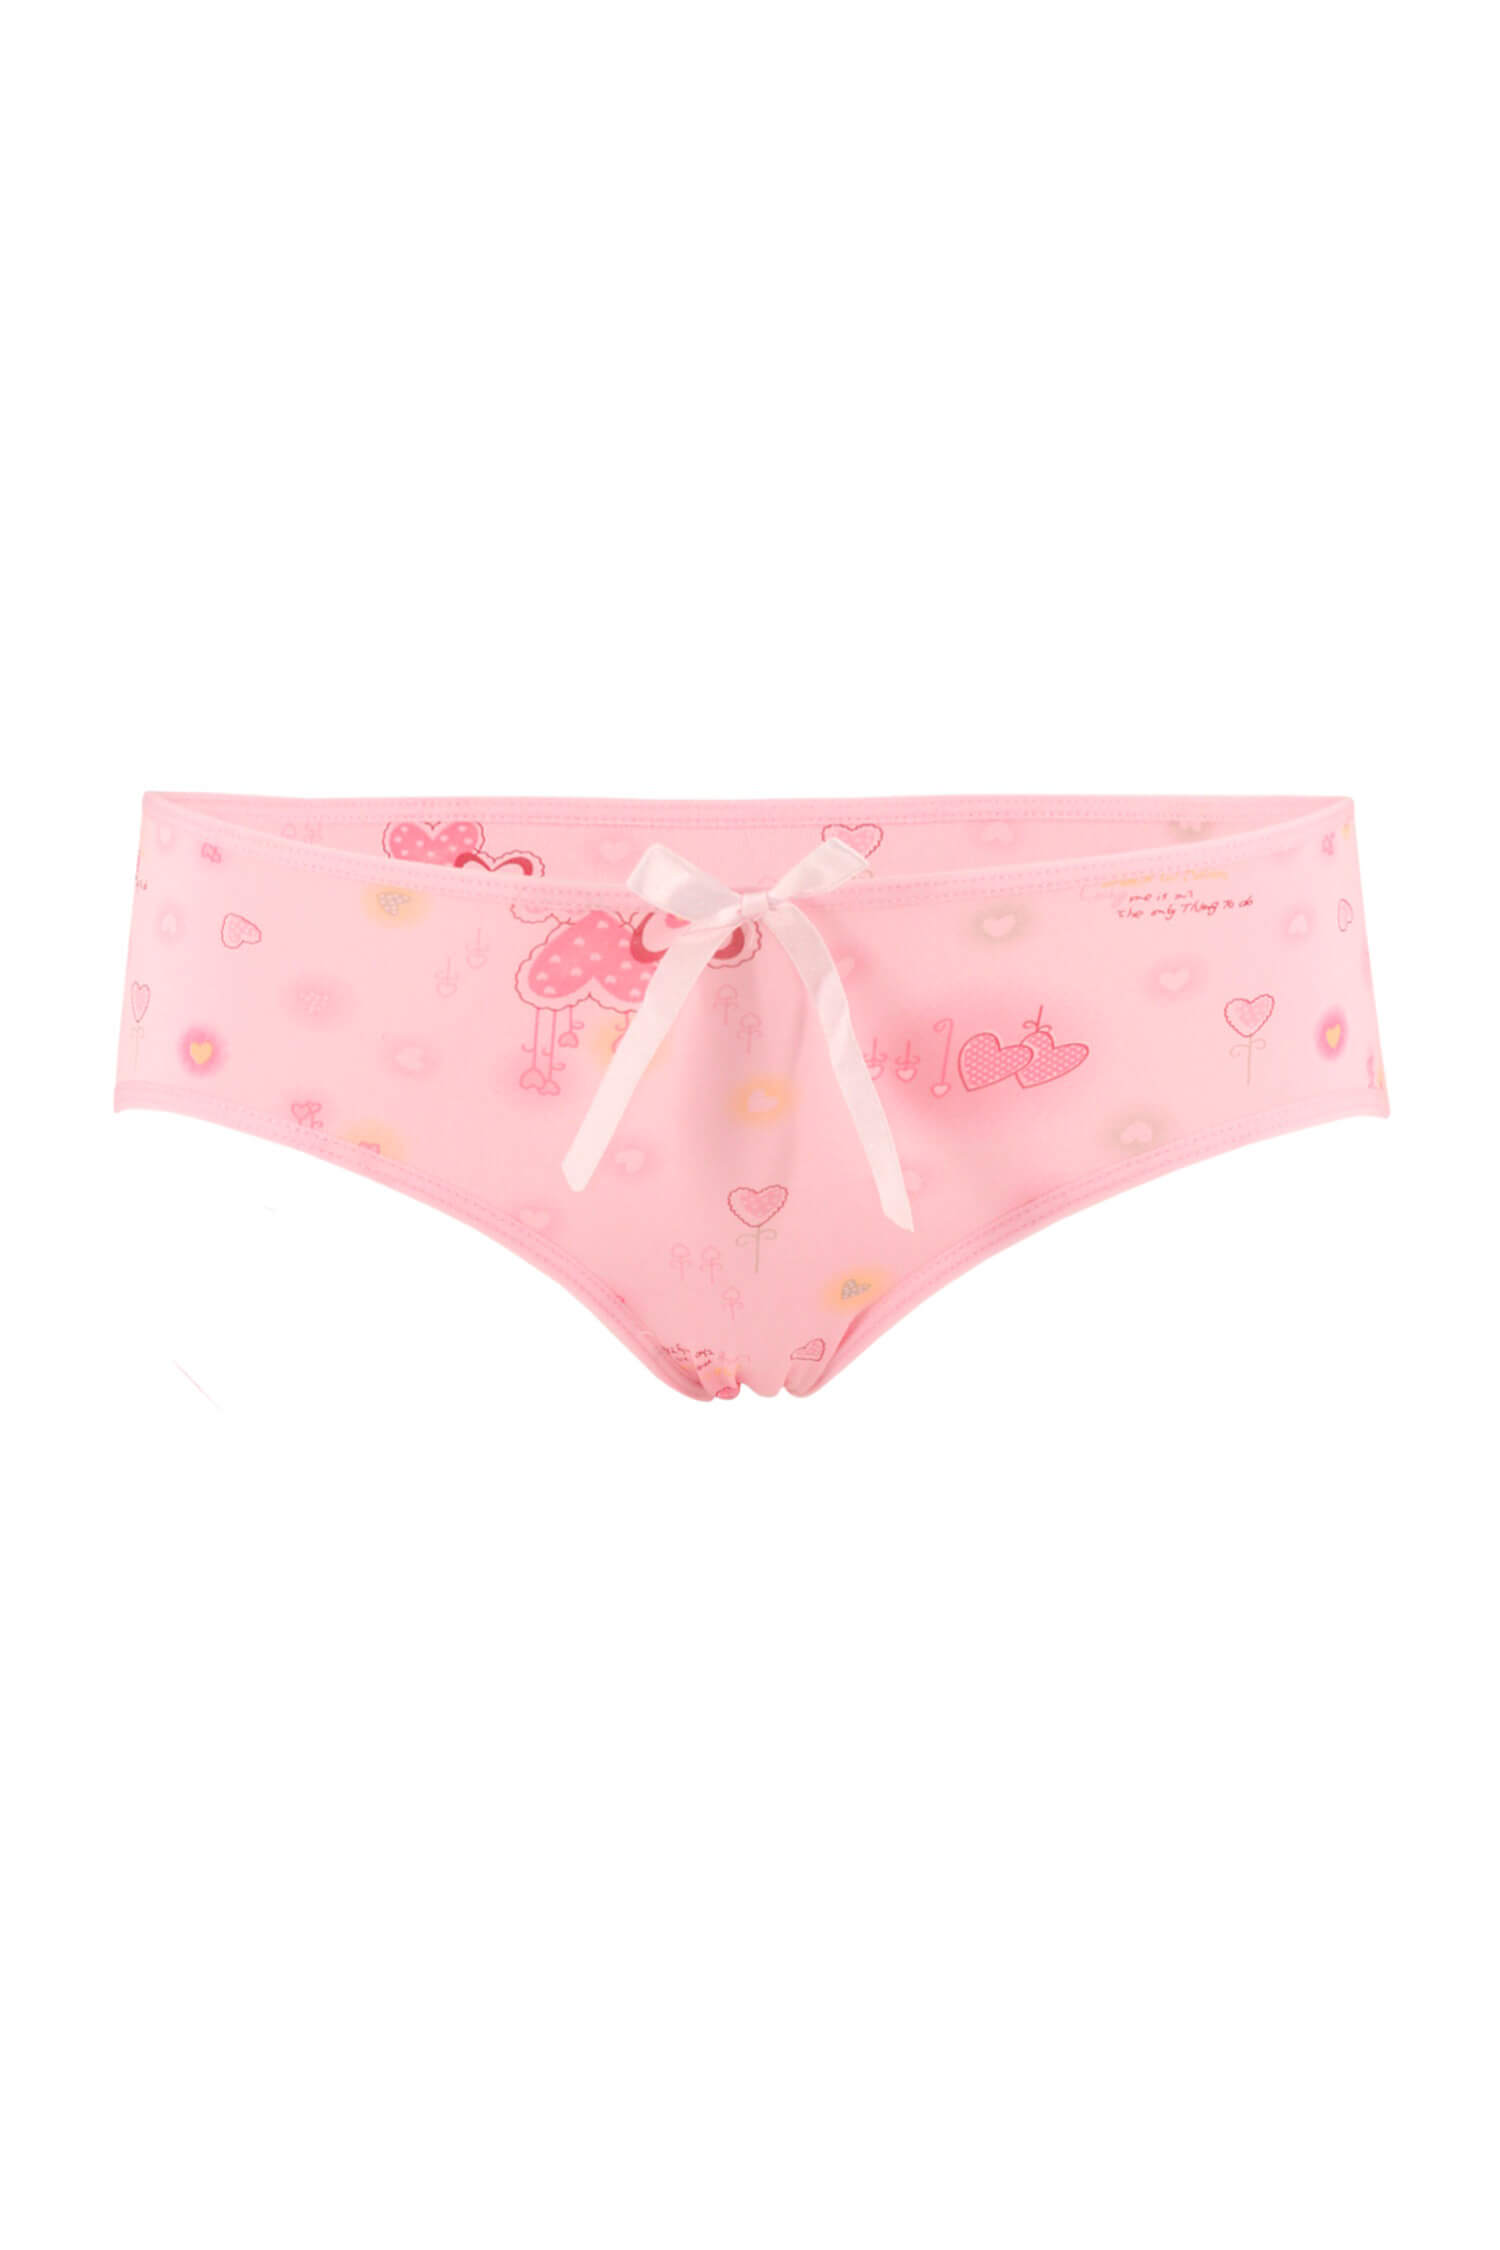 Ronia Heart roztomilé kalhotky se srdíčky 788-05 M růžová